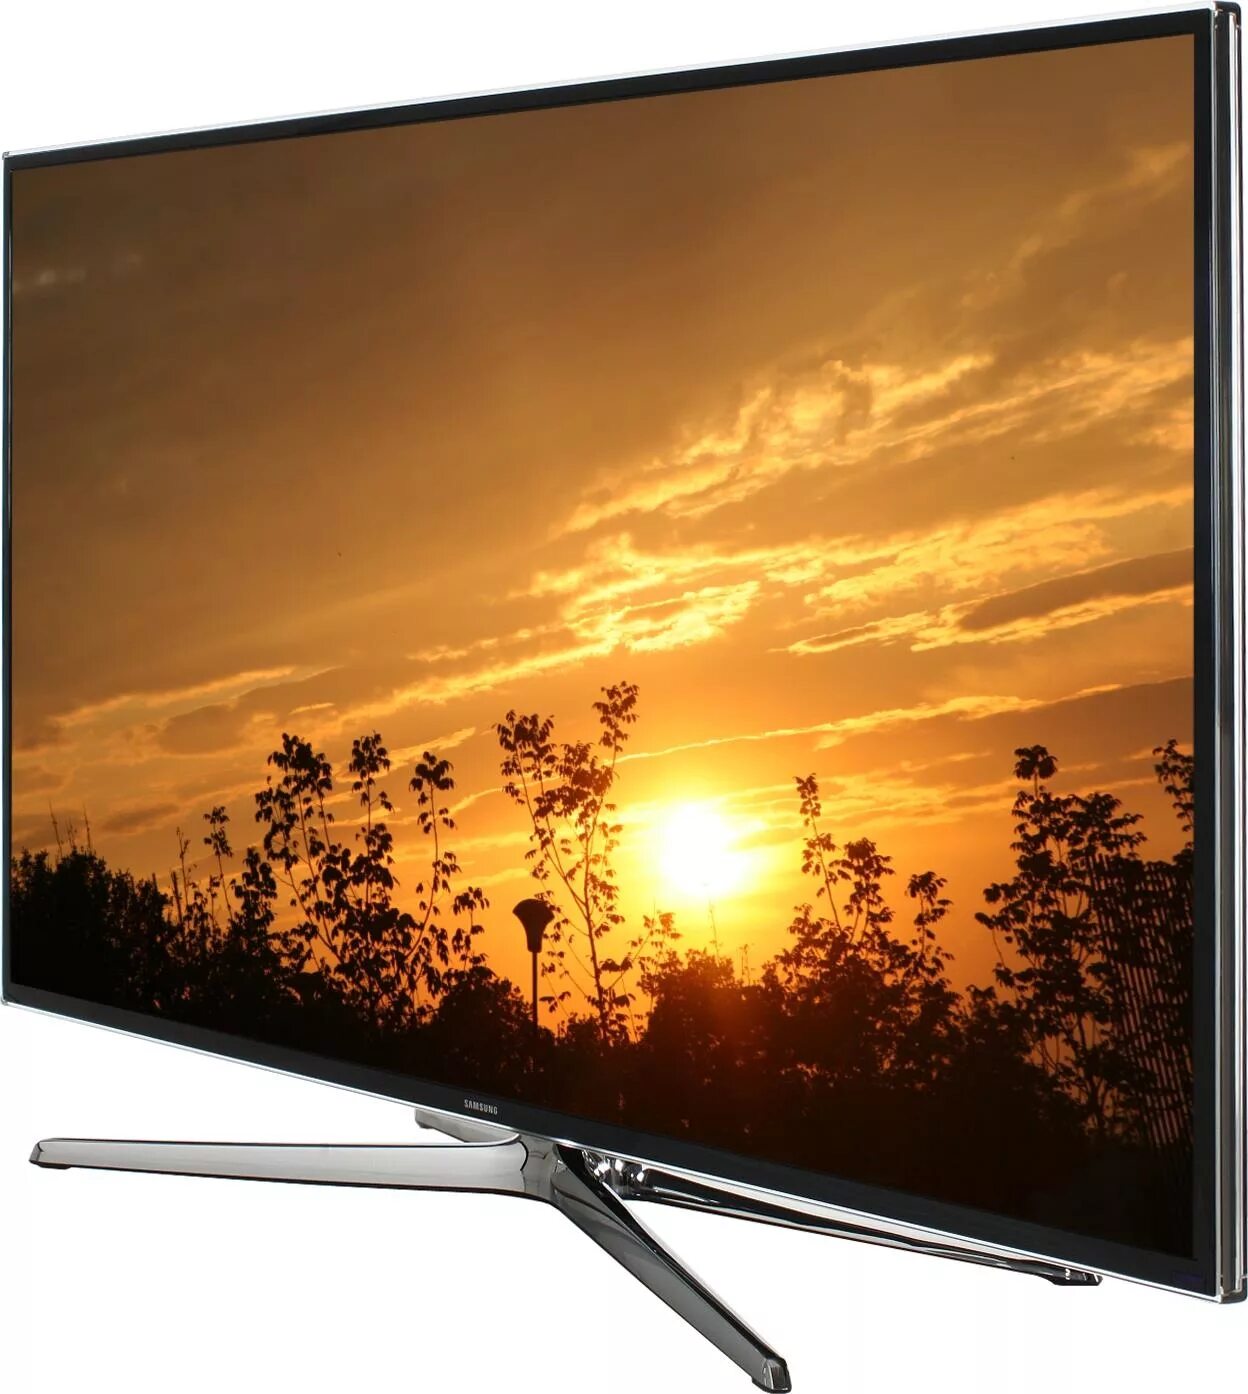 Samsung led 48 Smart TV. Samsung led 40 Smart TV 2014. Samsung led 40 Smart TV 2013. Телевизор Samsung ue48h6230.